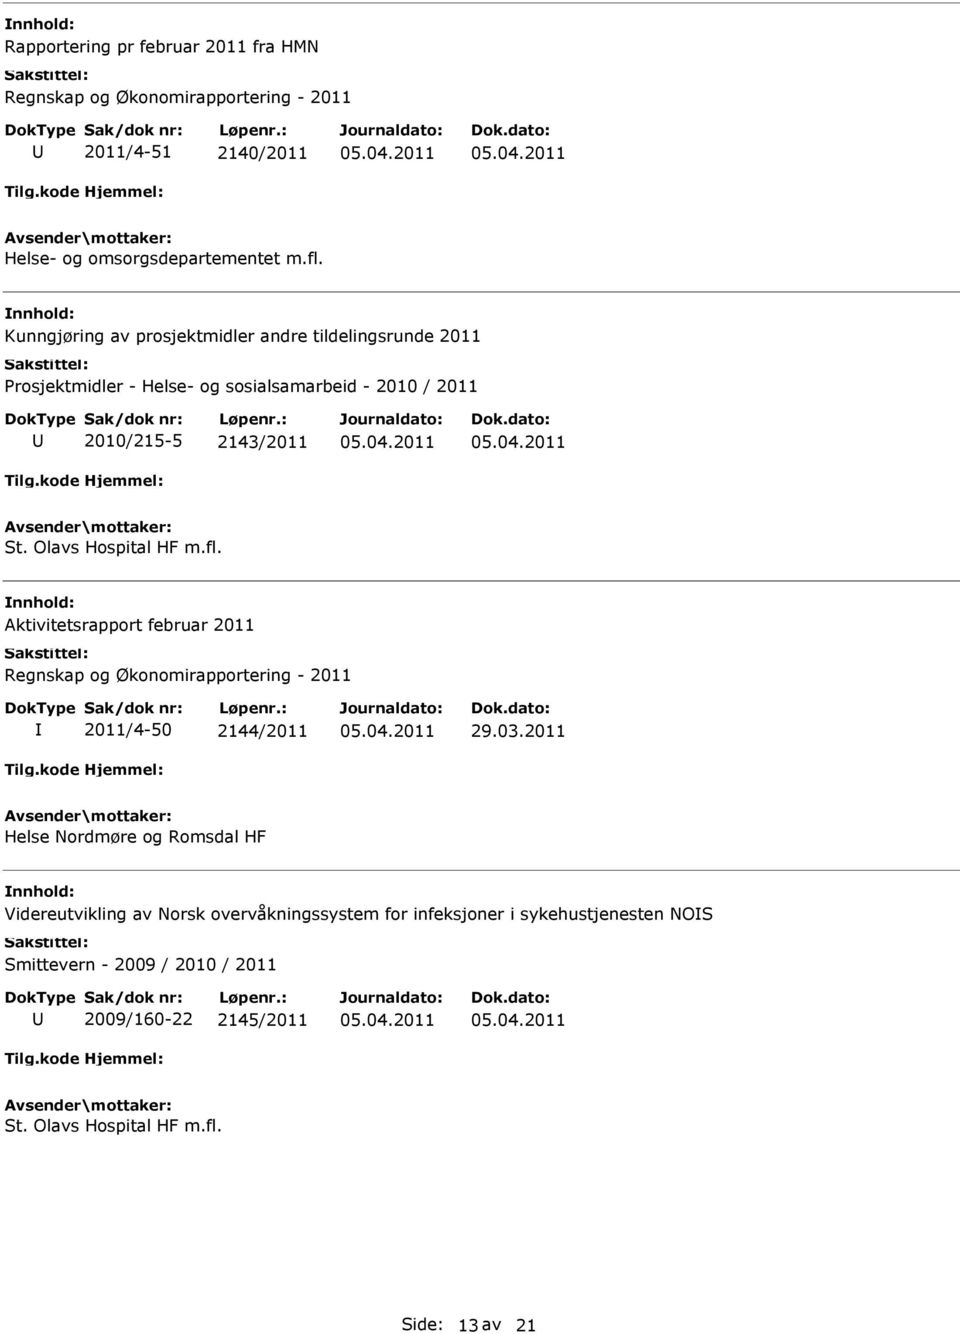 Olavs Hospital HF m.fl. Aktivitetsrapport februar 2011 Regnskap og Økonomirapportering - 2011 2011/4-50 2144/2011 29.03.